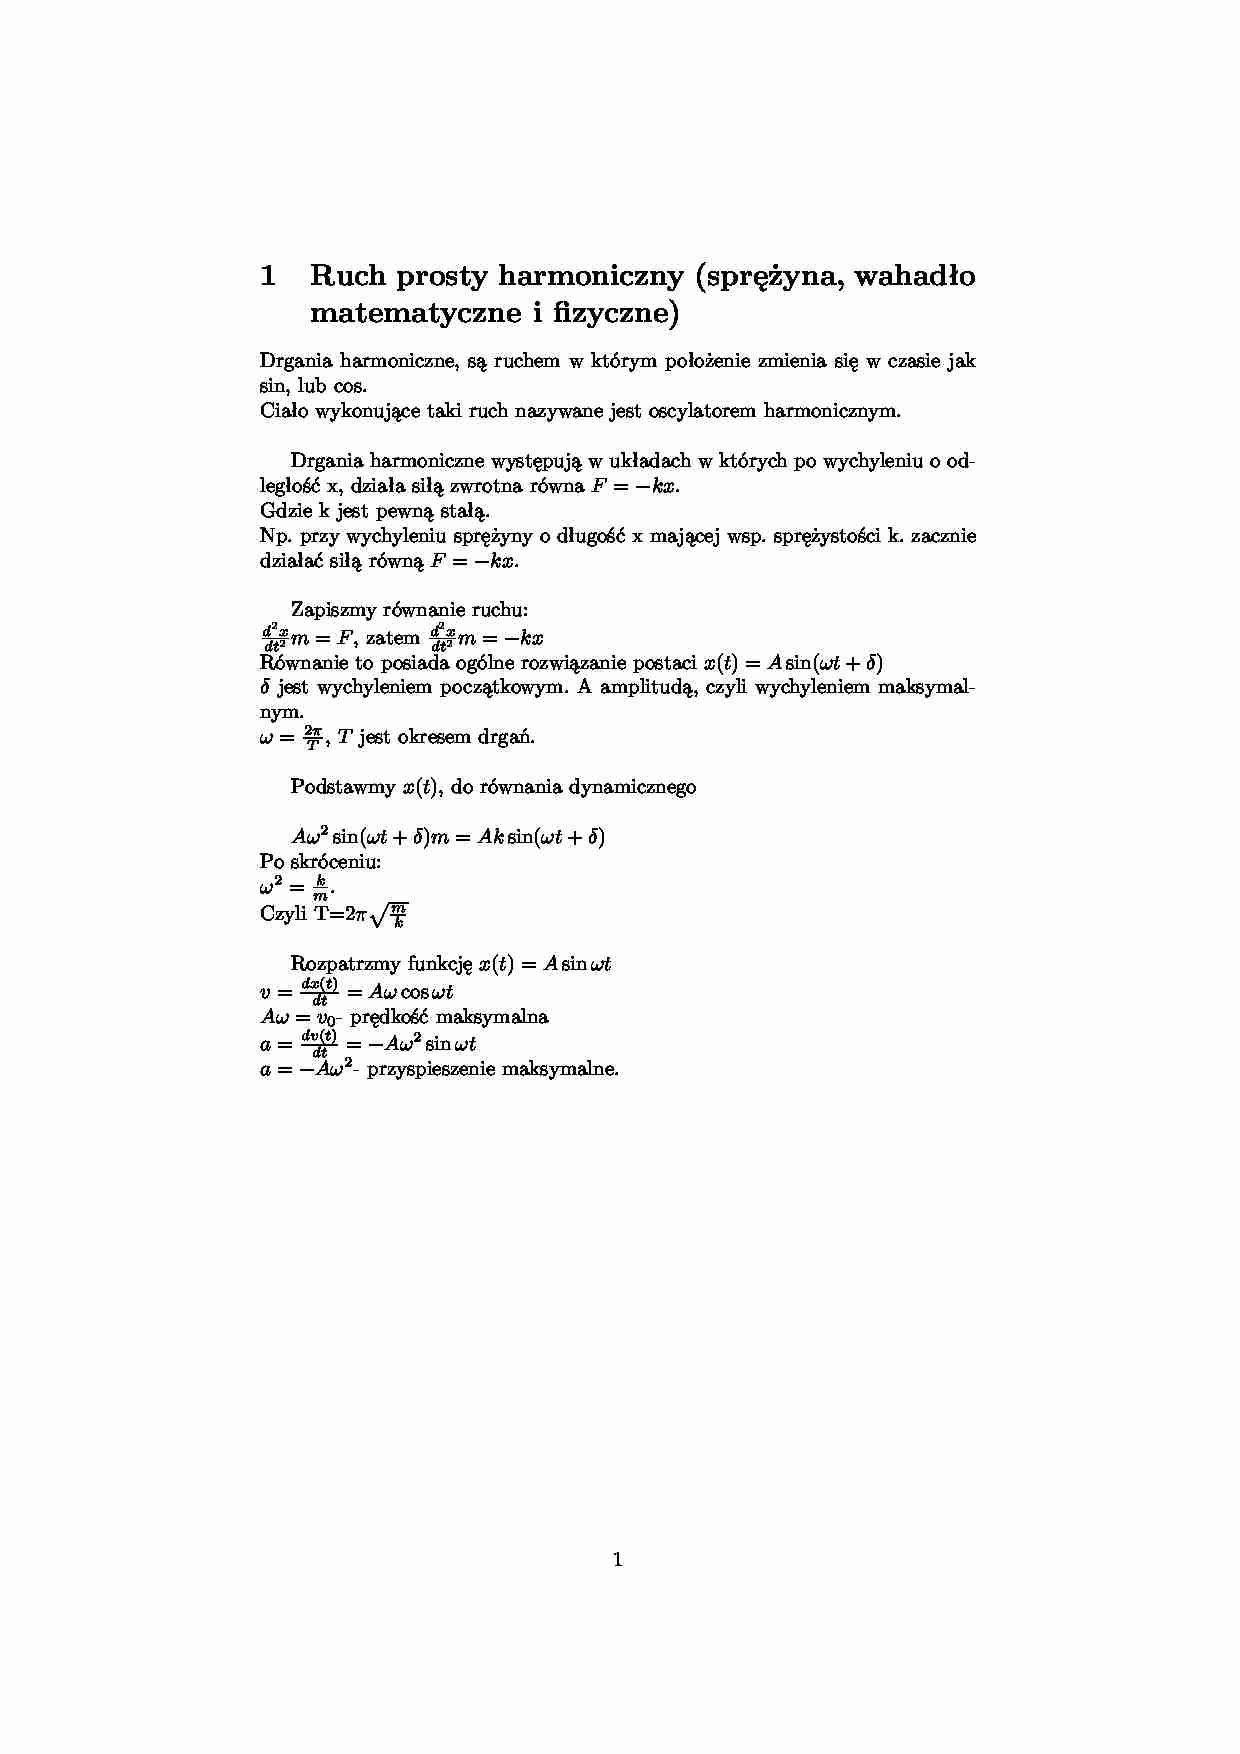 Ruch prosty harmoniczny (sprężyna, wahadło matematyczne i fizyczne) - strona 1